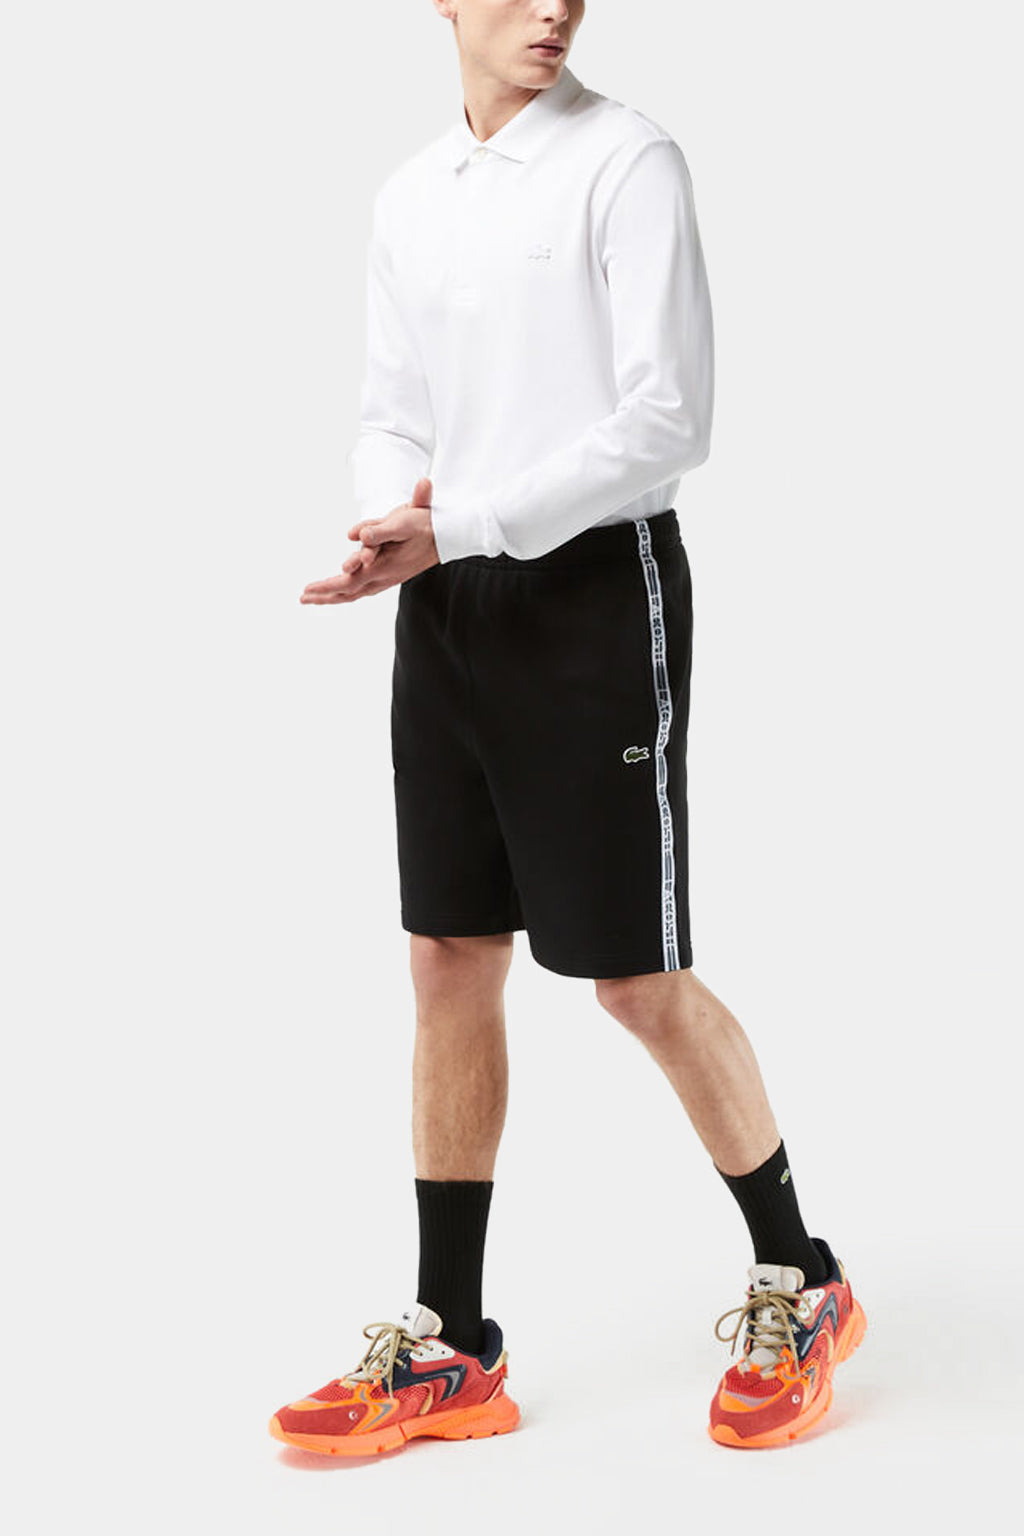 Lacoste - Men’s Lacoste Cotton Flannel Shorts